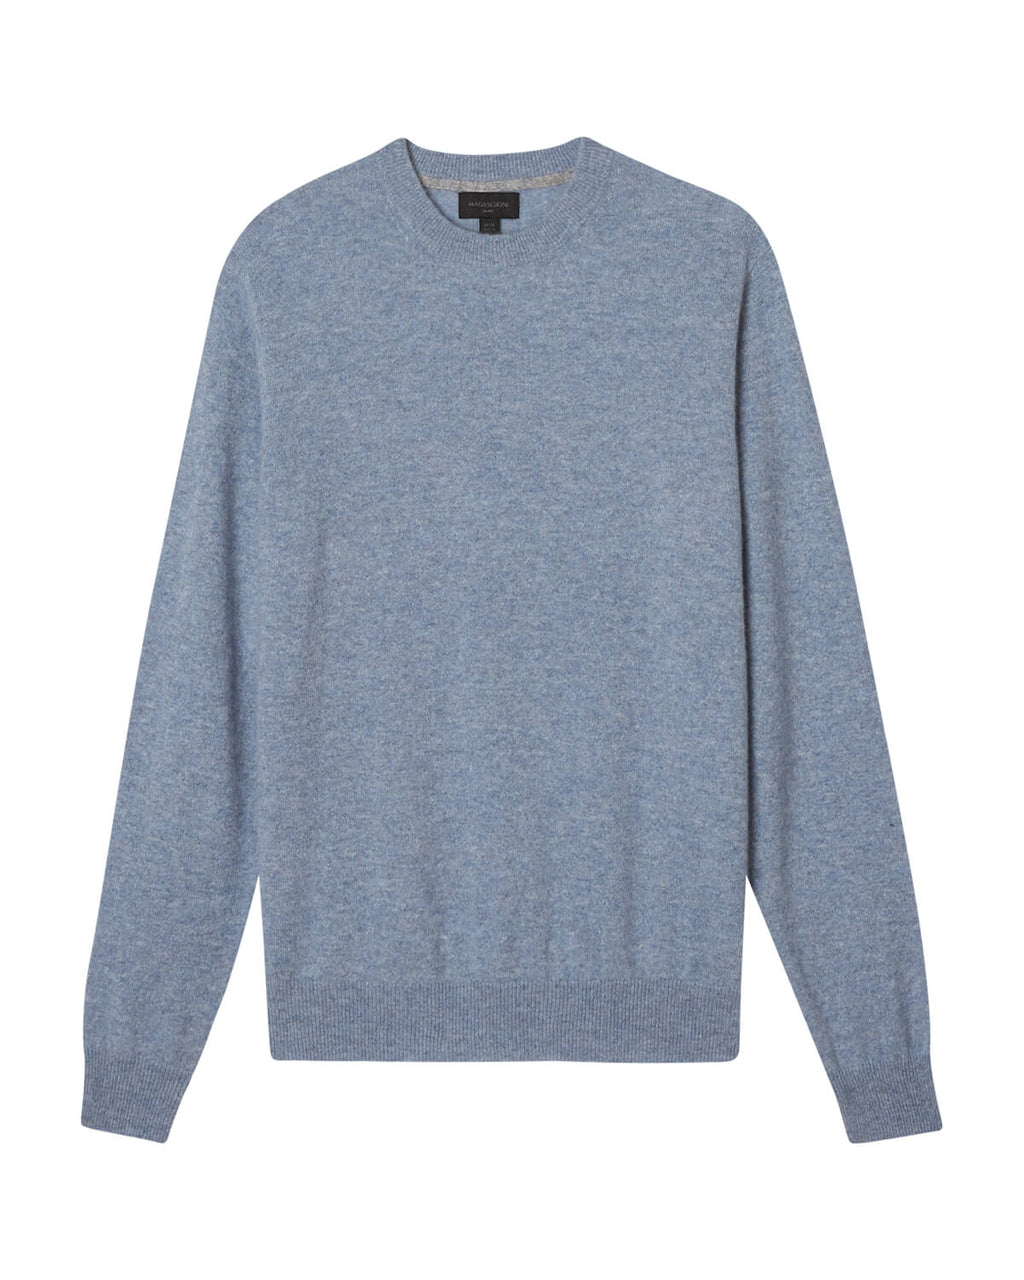 Pure cashmere crew-neck sweater, Le 31, Shop Men's Crew Neck Sweaters  Online